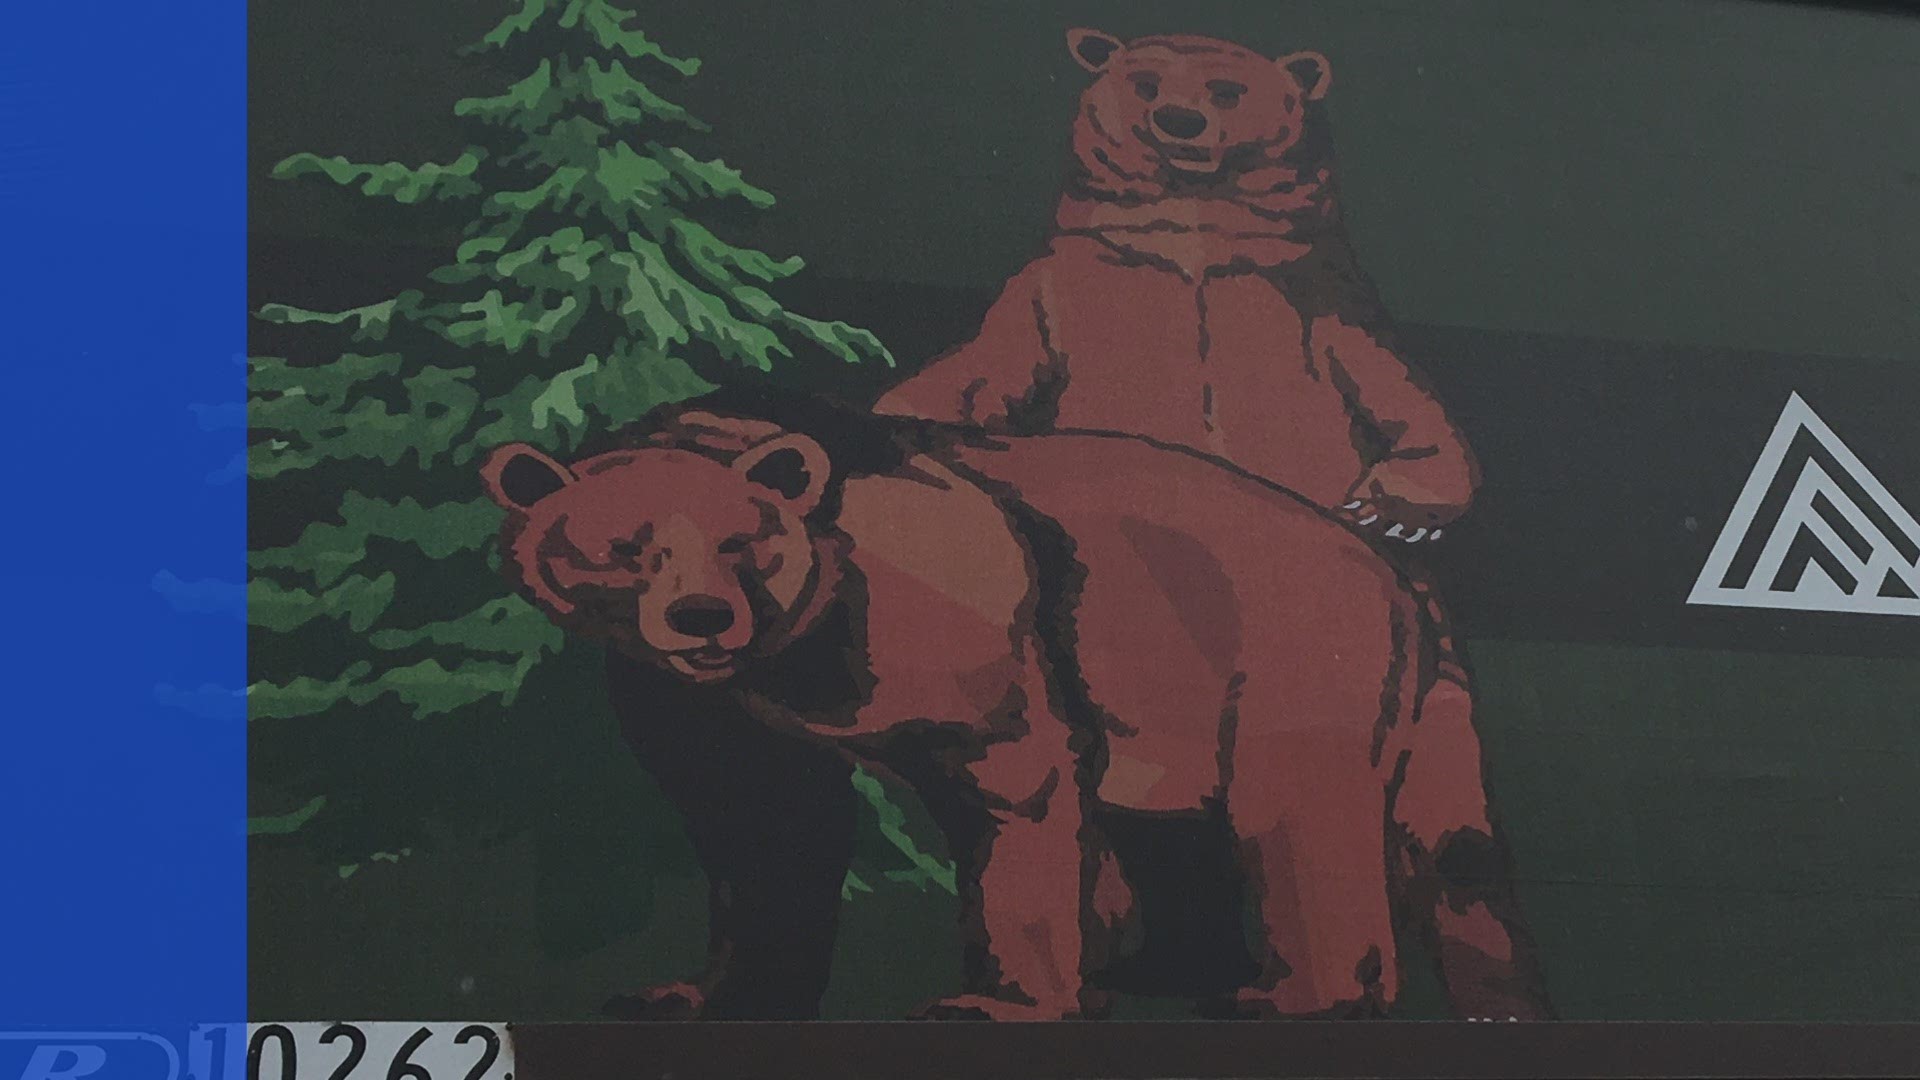 Spokane Billboard Showing Mating Bears Gets Taken Down 